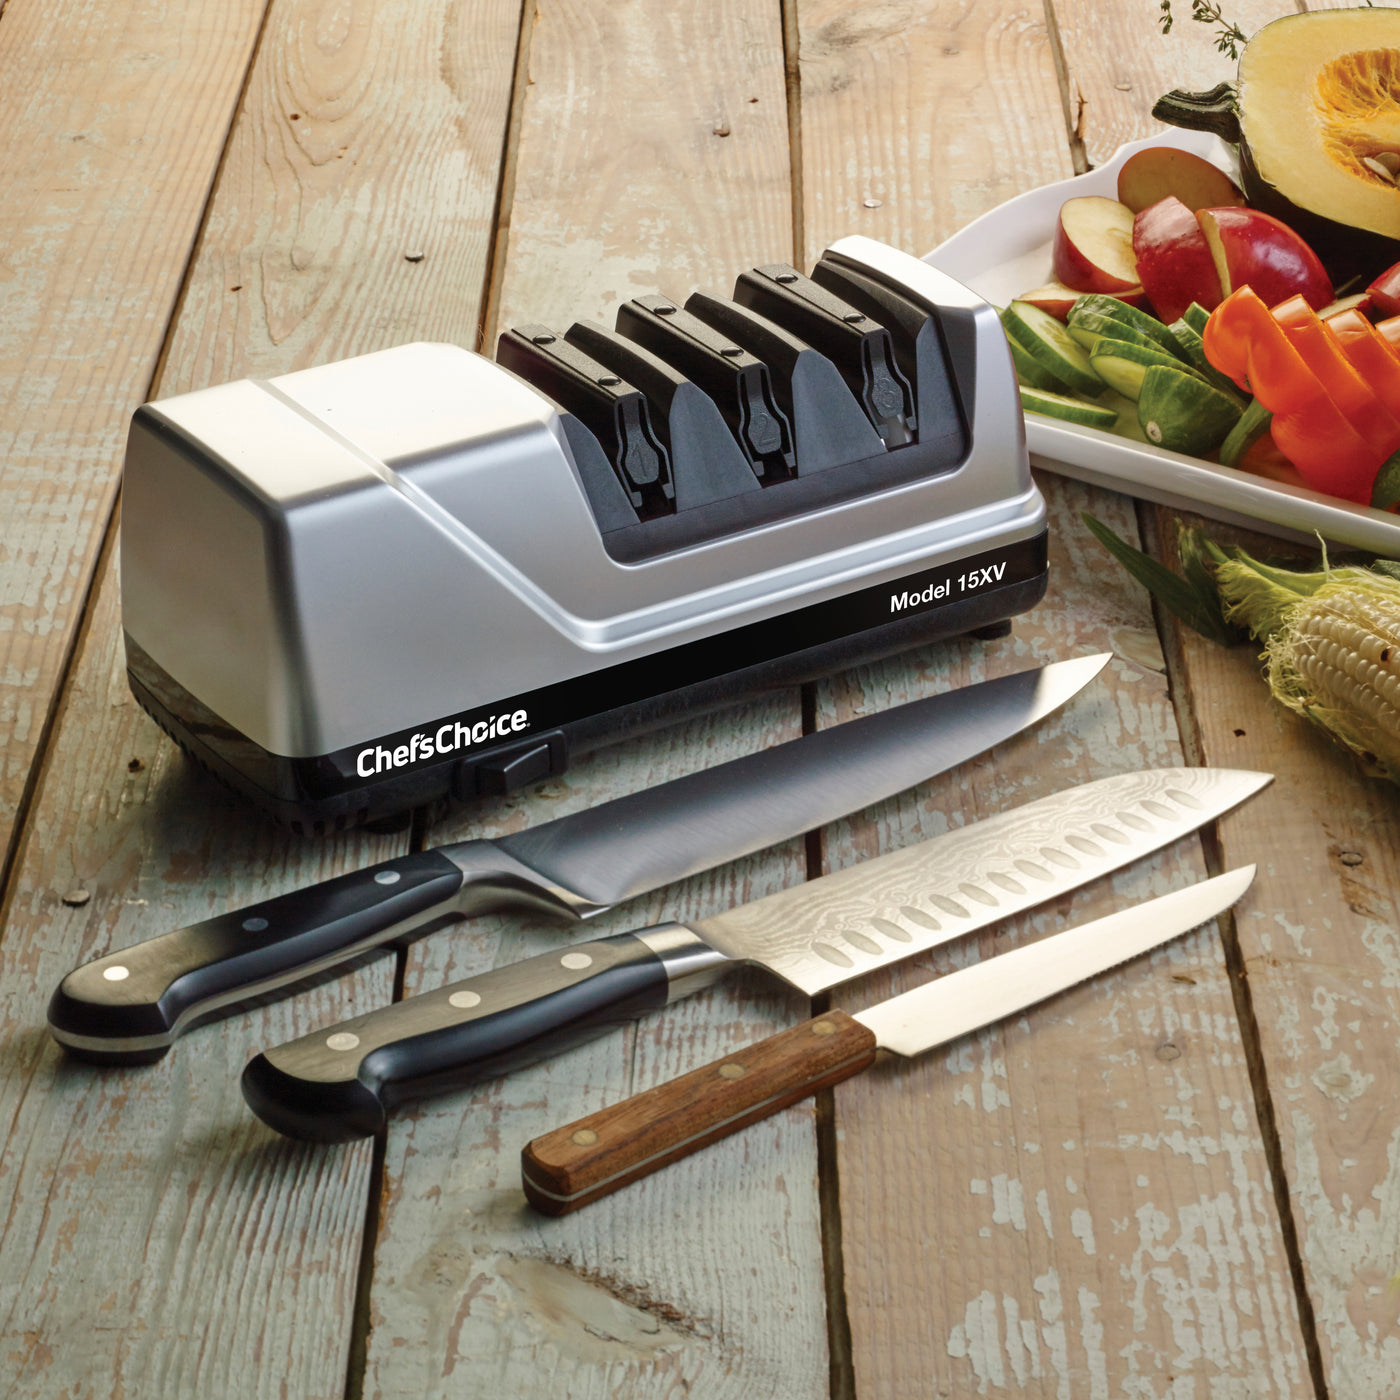 Afilador de cuchillos eléctrico profesional Chef'sChoice 15XV